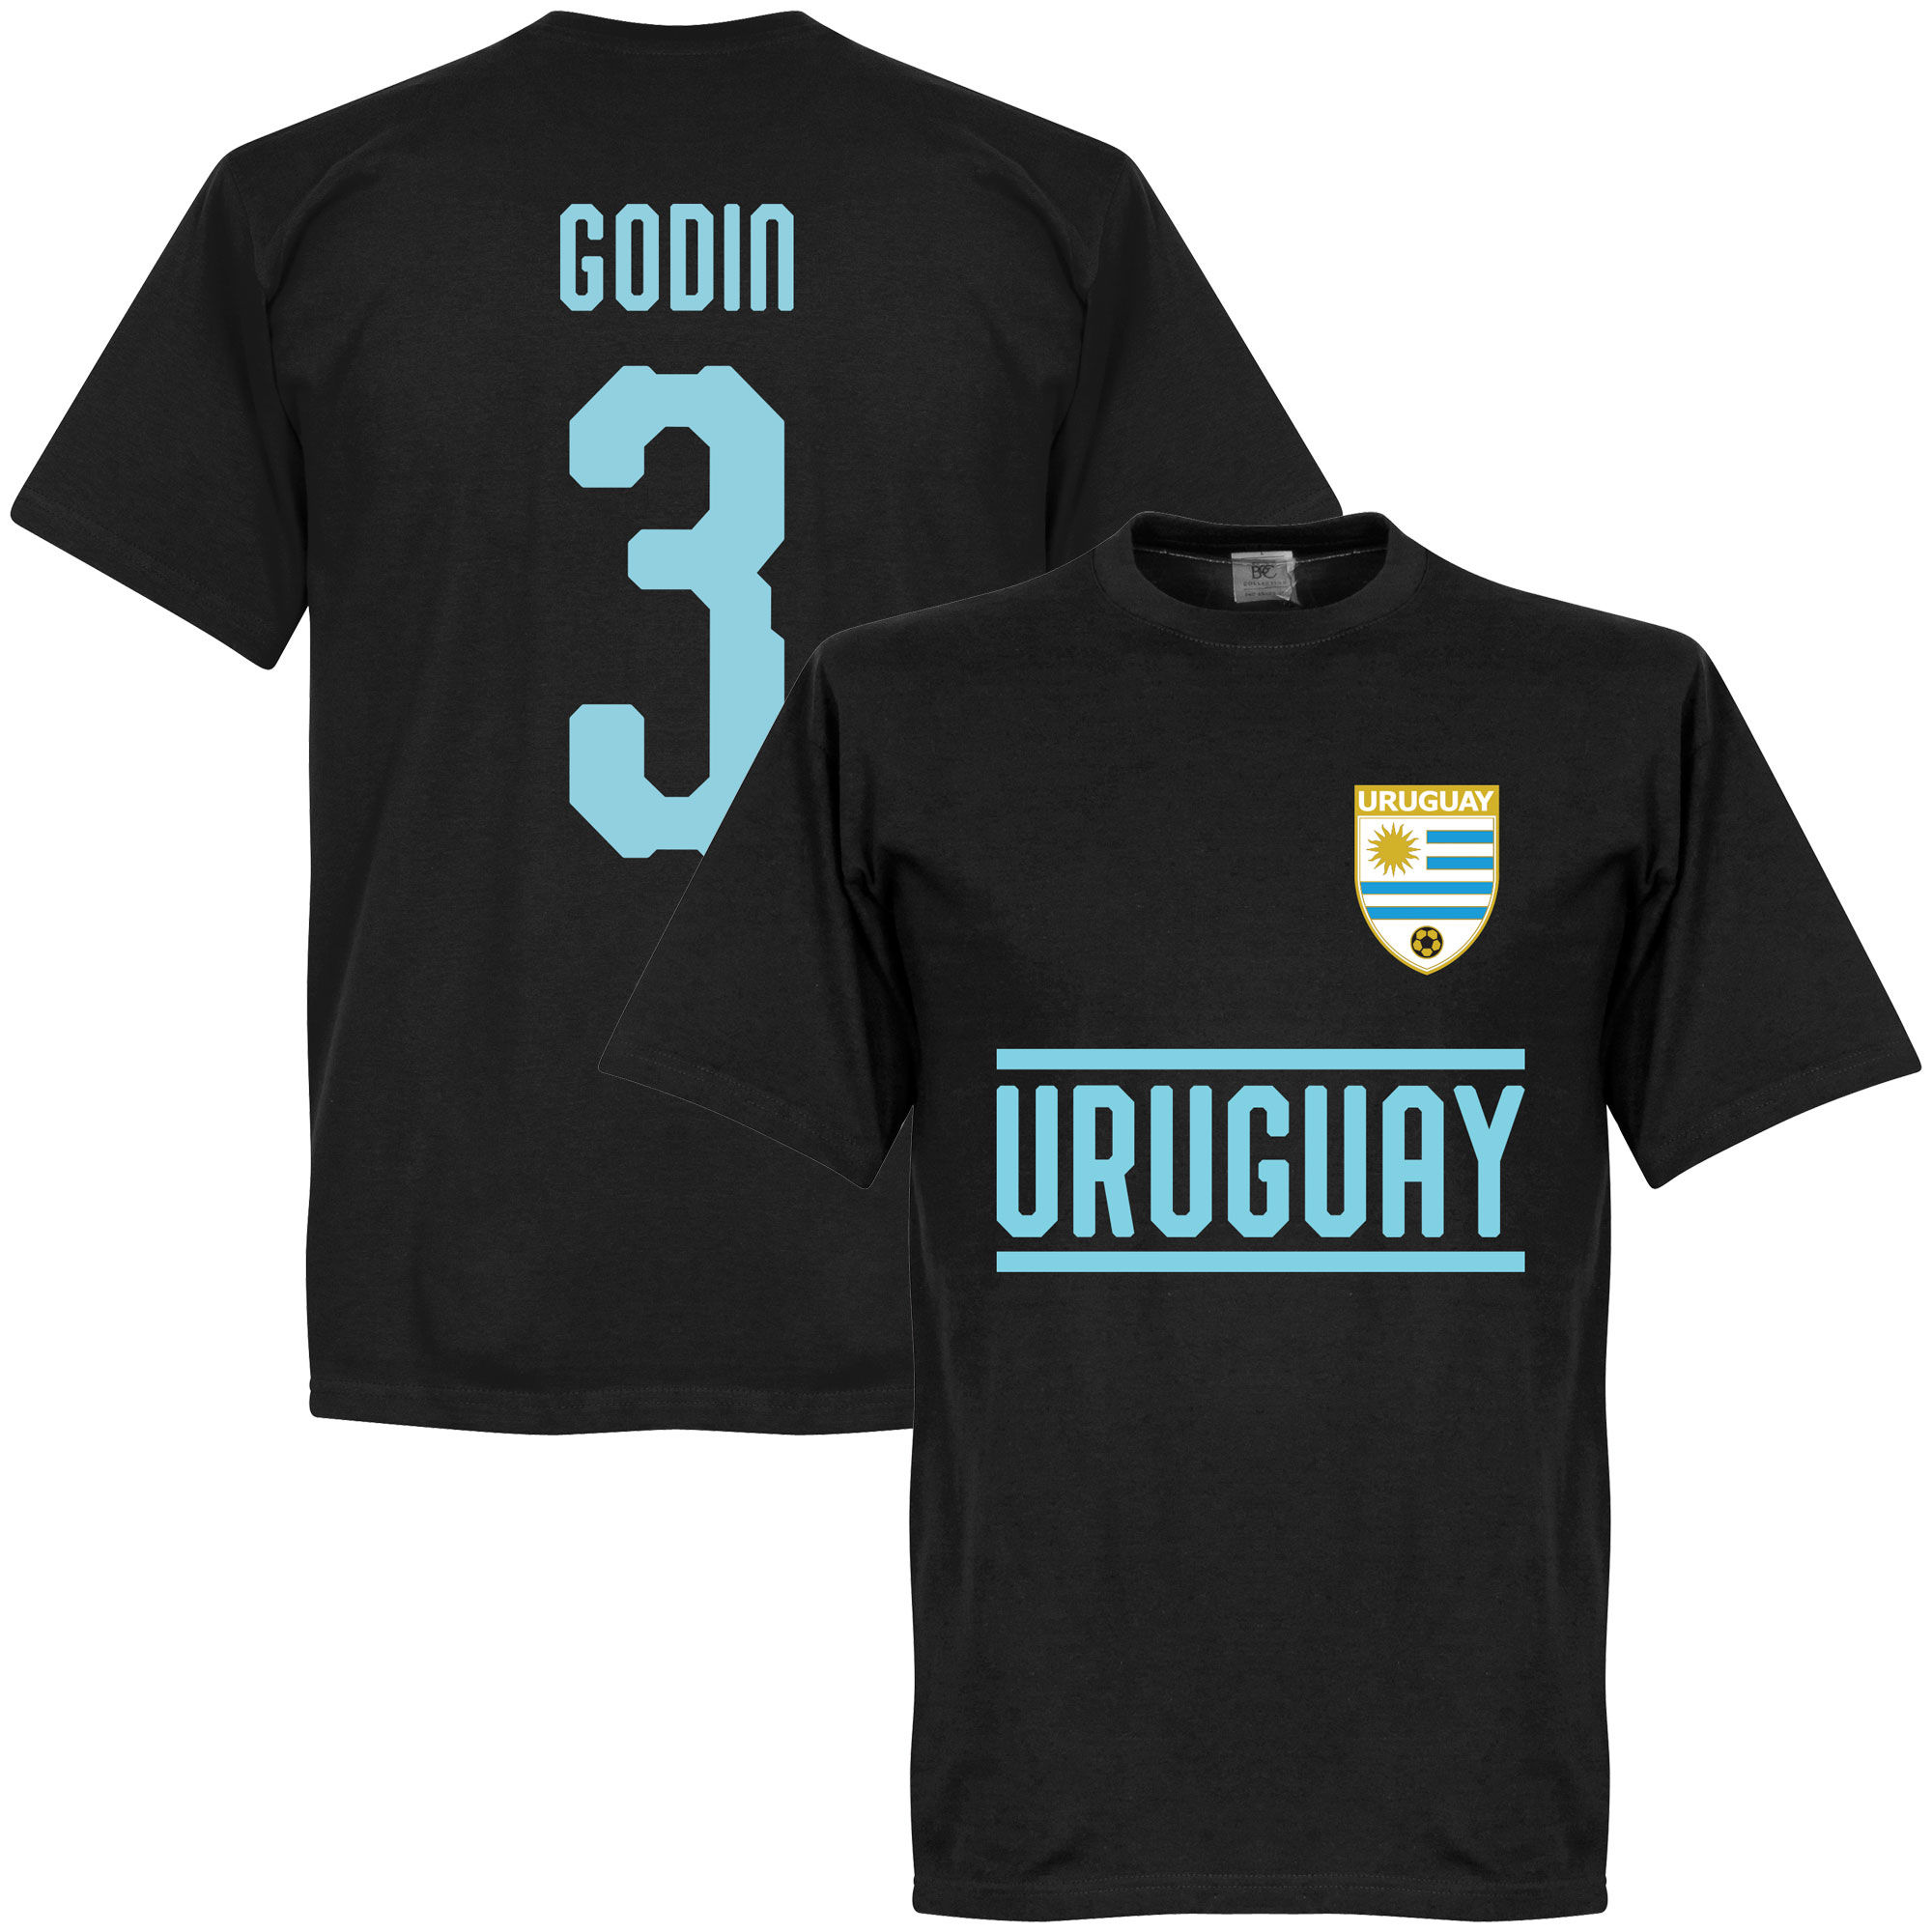 Uruguay - Tričko - Diego Godín, číslo 3, černé